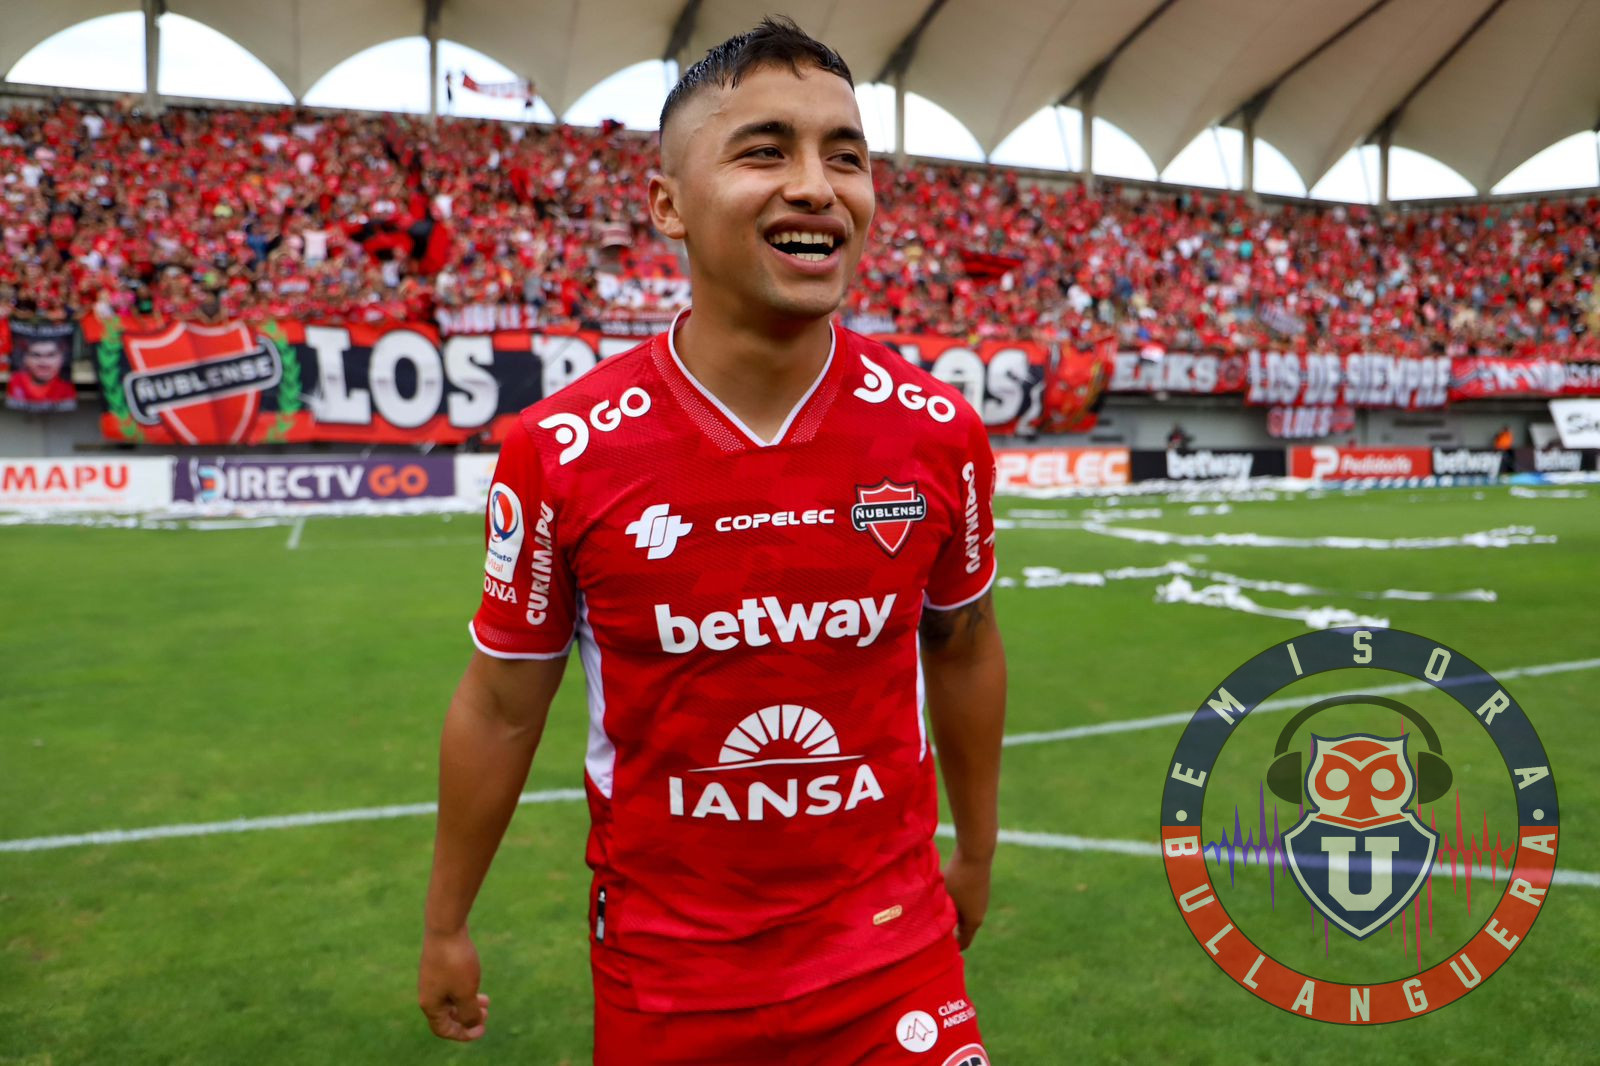 Nicolás Guerra confiesa uno de sus sueños en el fútbol: “Quiero volver a la U”